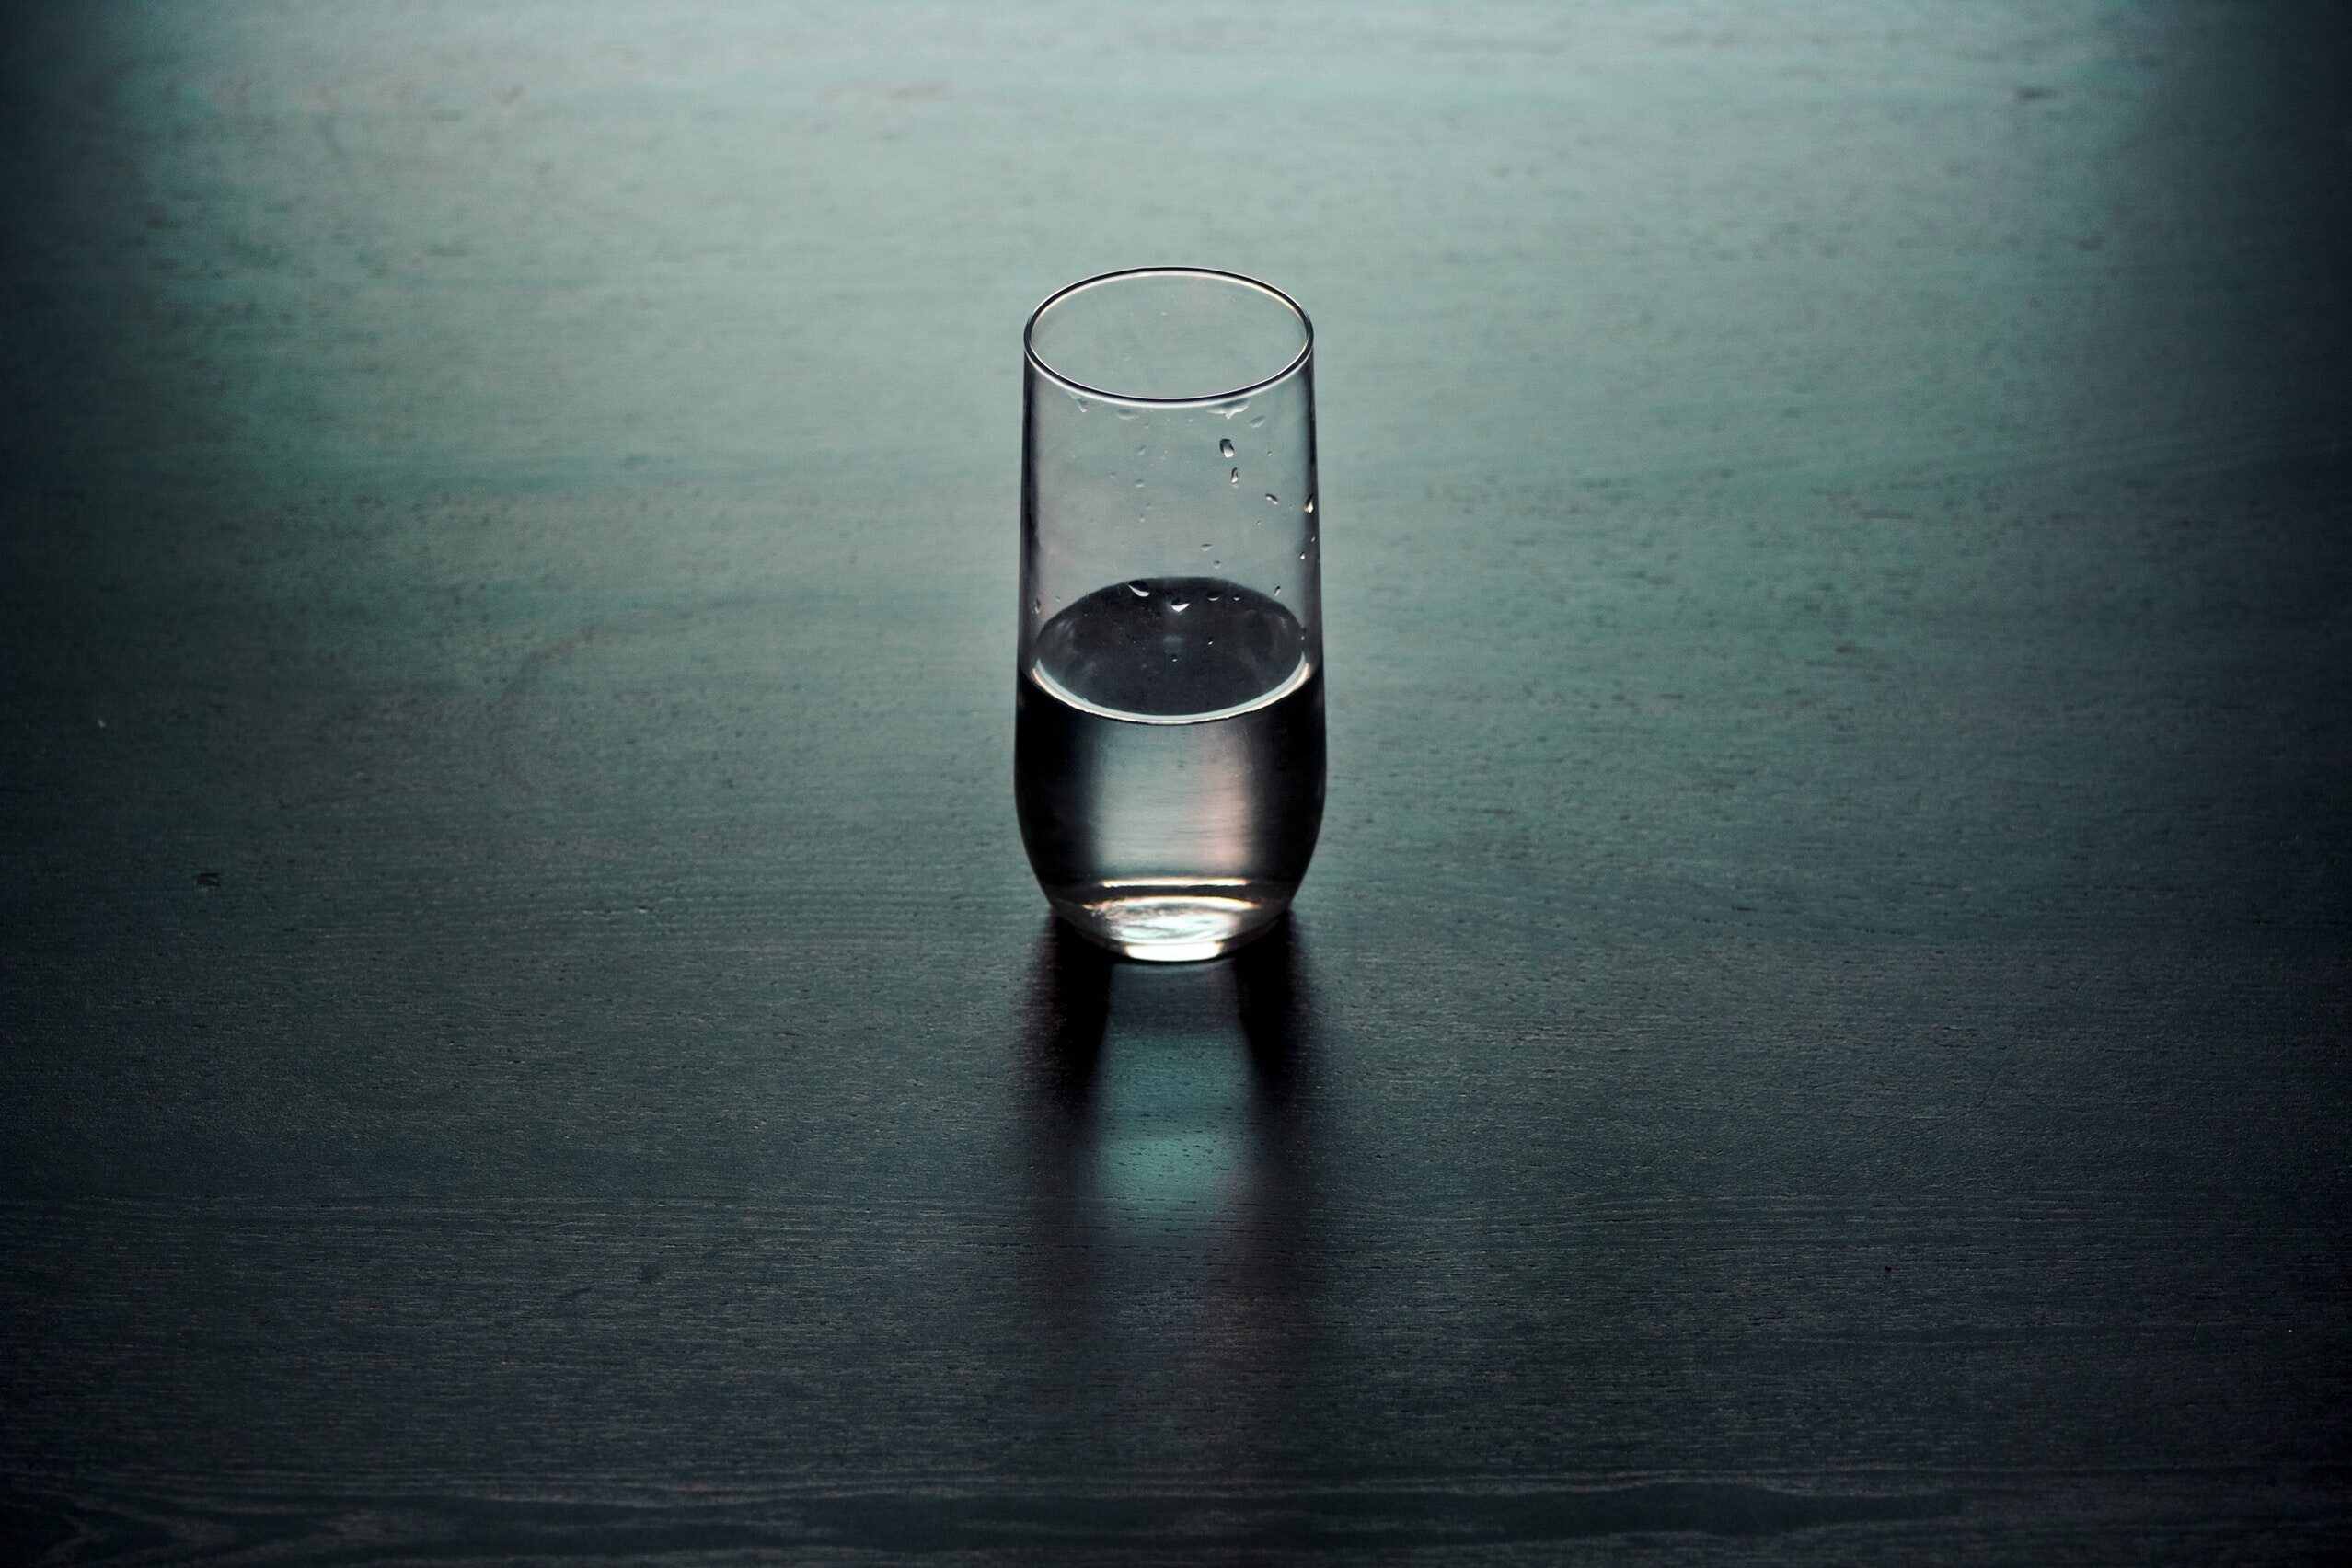 Szklanka wody